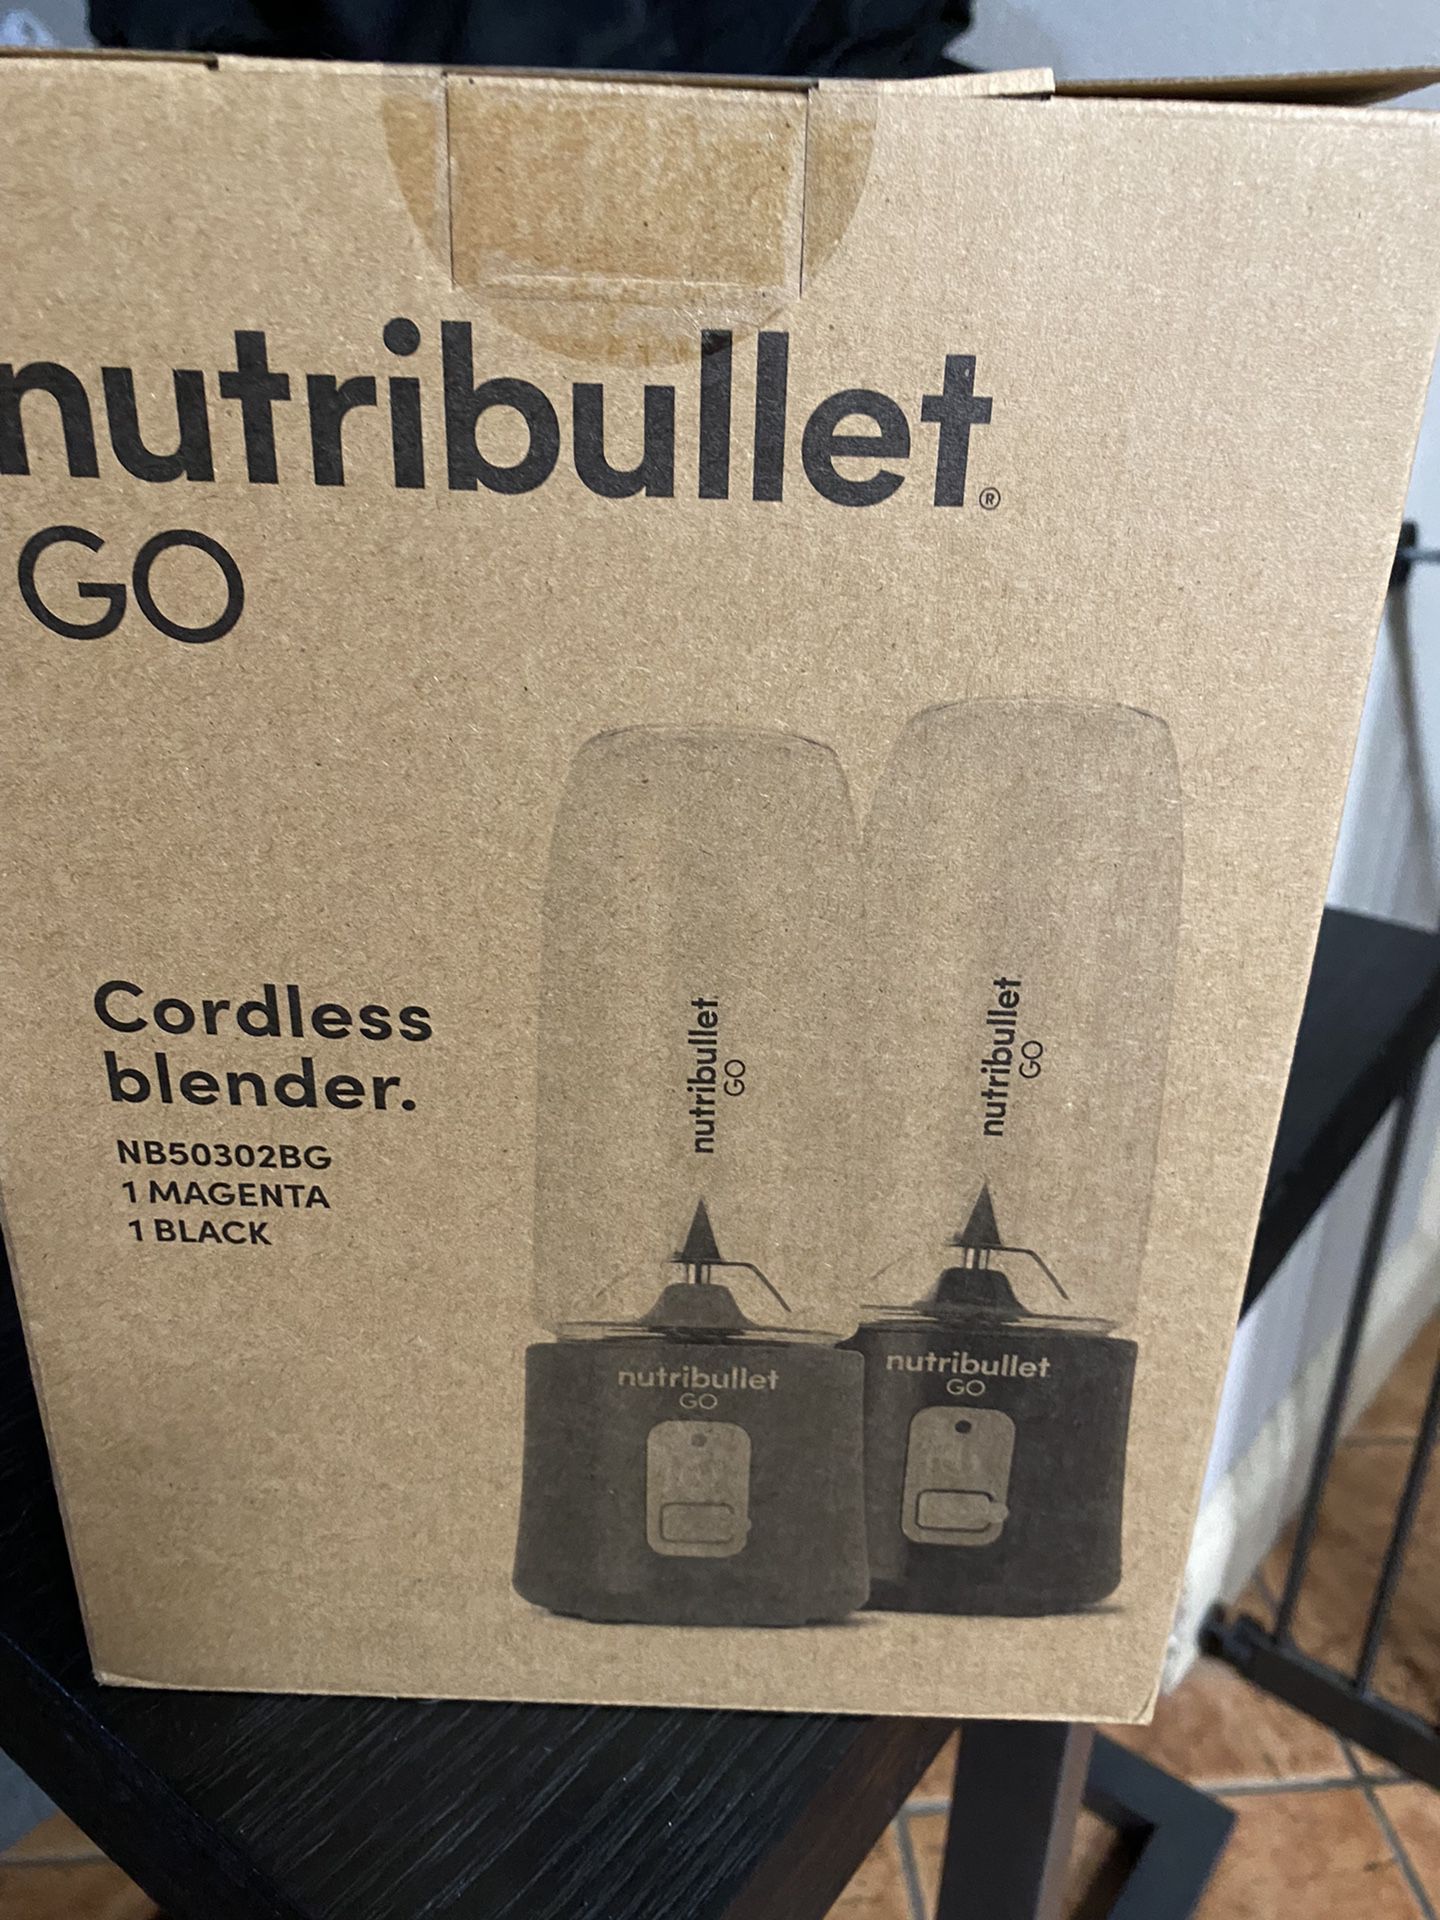 Personal Blenders Nutribullet 